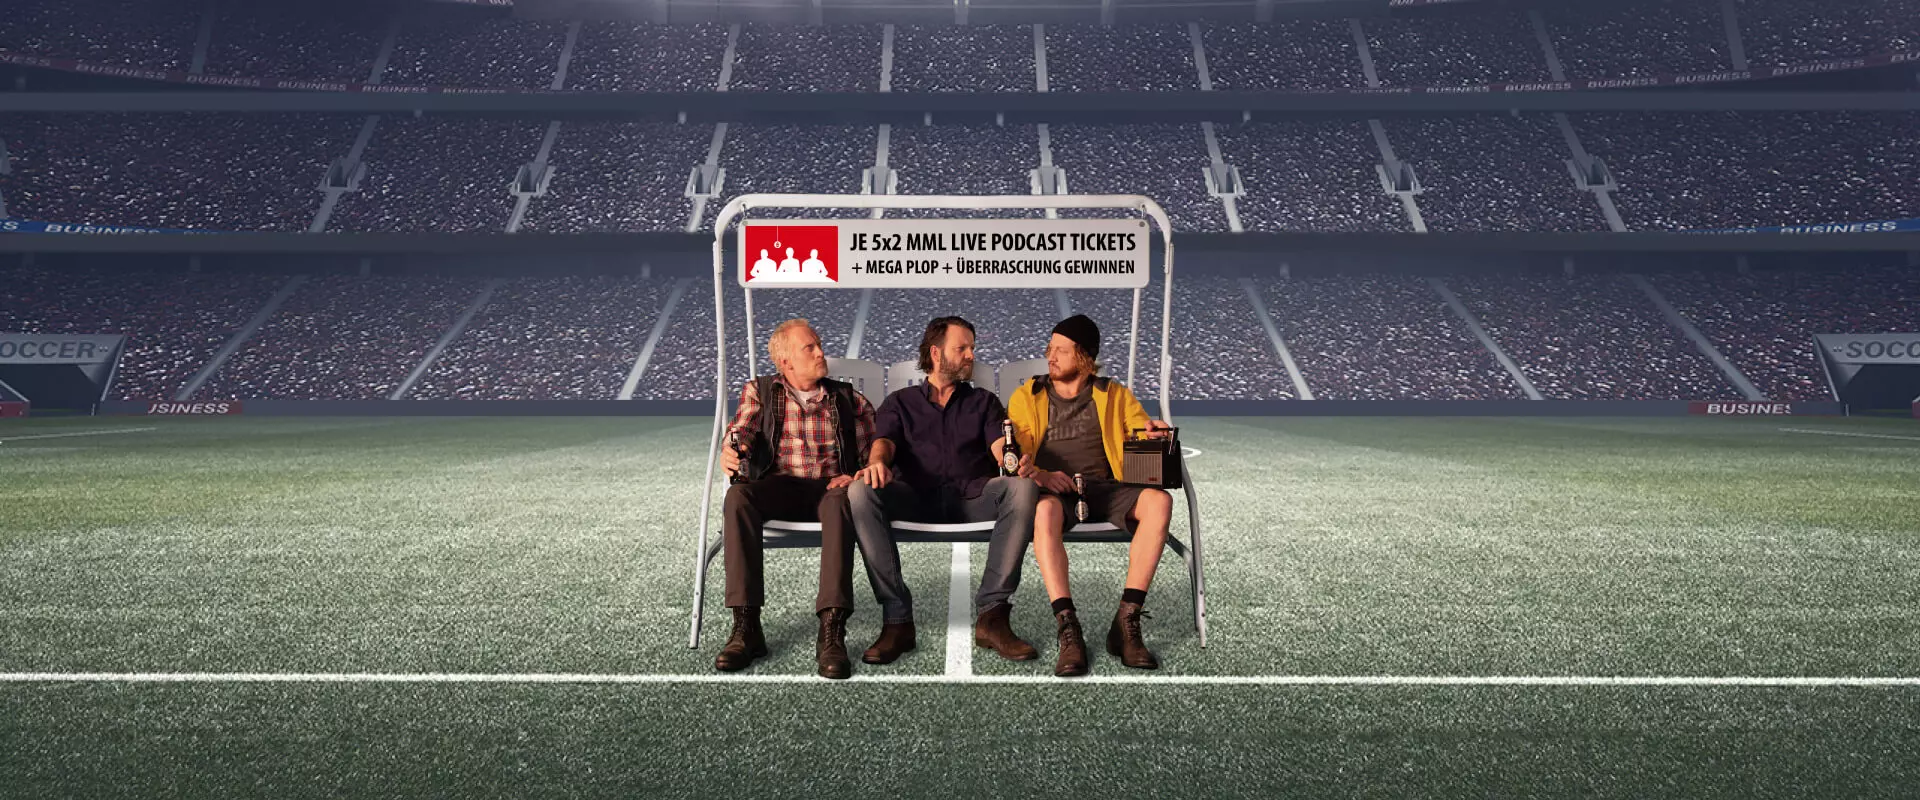 Drei Männer auf einer Hollywood-Schaukel im Fußballstadion; über ihren Köpfen ein Banner mit dem Text: "Je 5x2 MML Live Podcast Tickets + Mega Plop + Überraschung gewinnen".